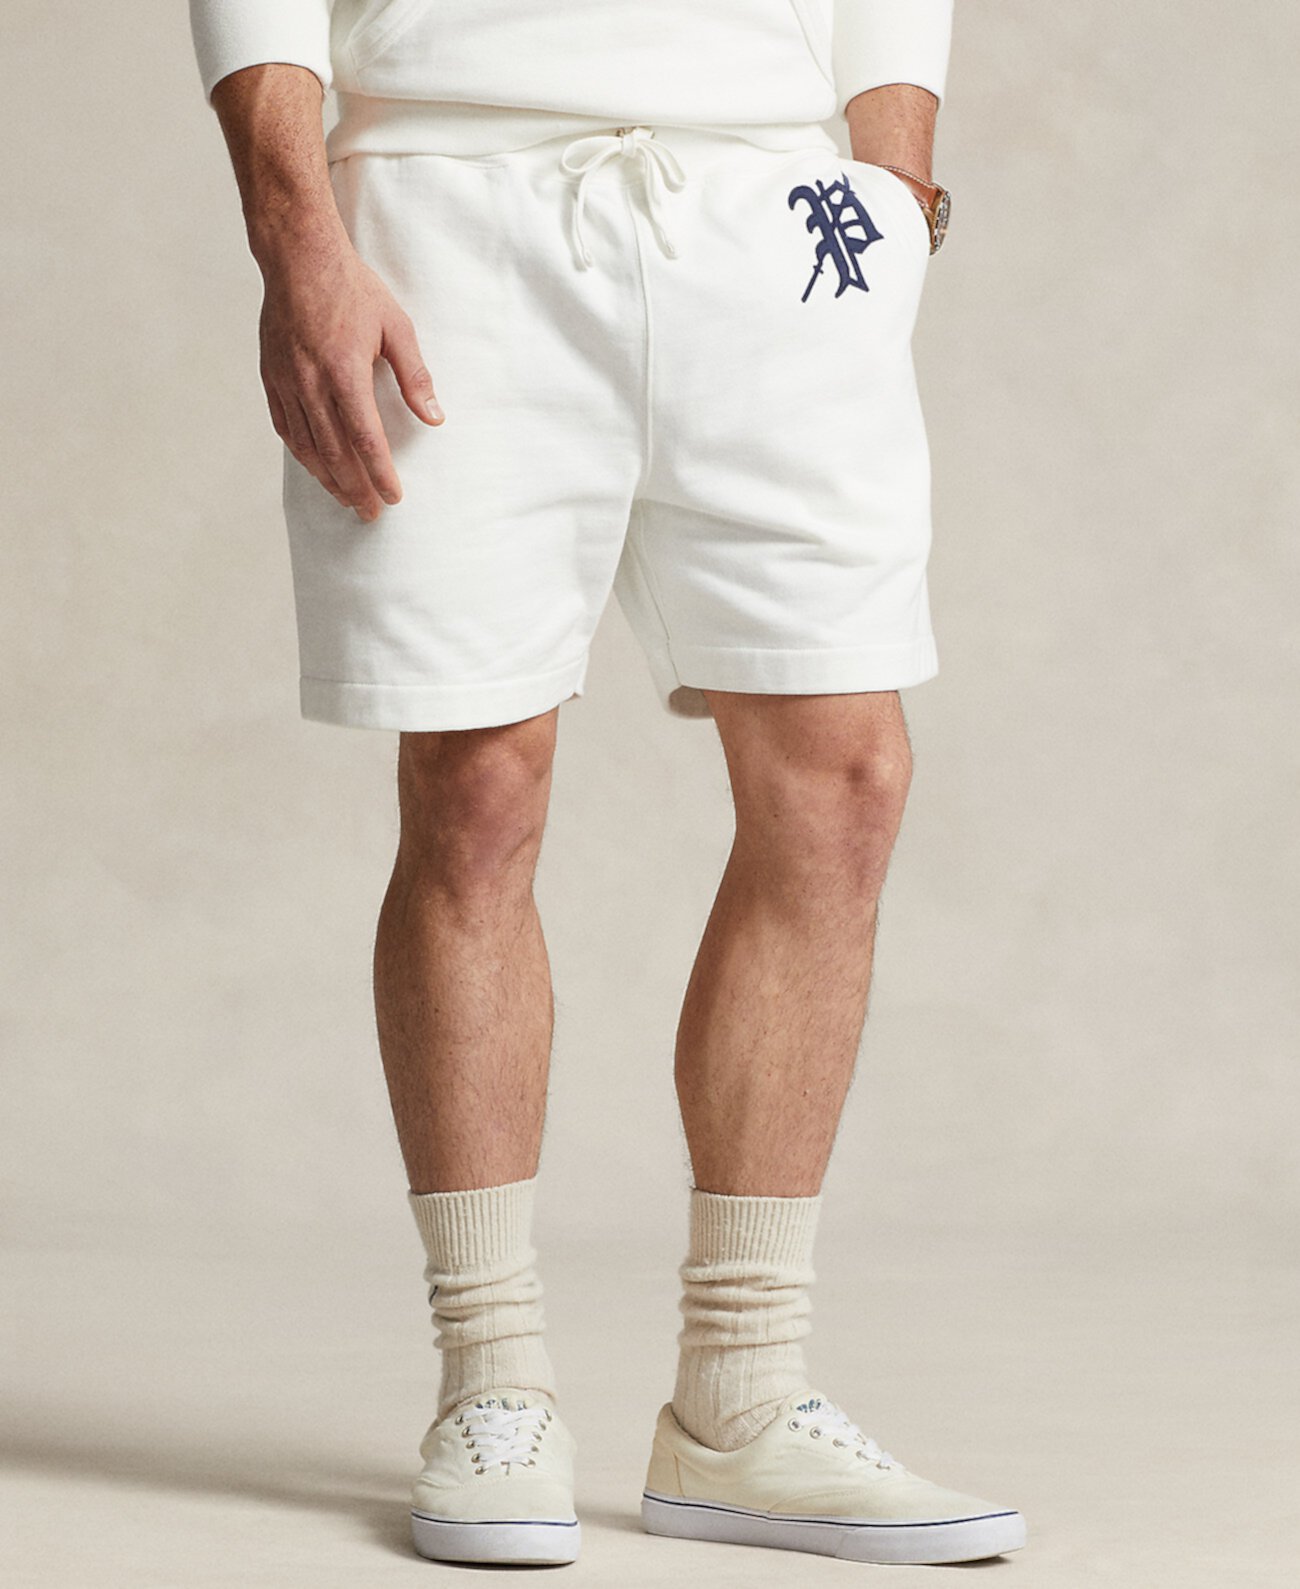 Мужские легкие флисовые шорты с рисунком шириной 6 дюймов Polo Ralph Lauren